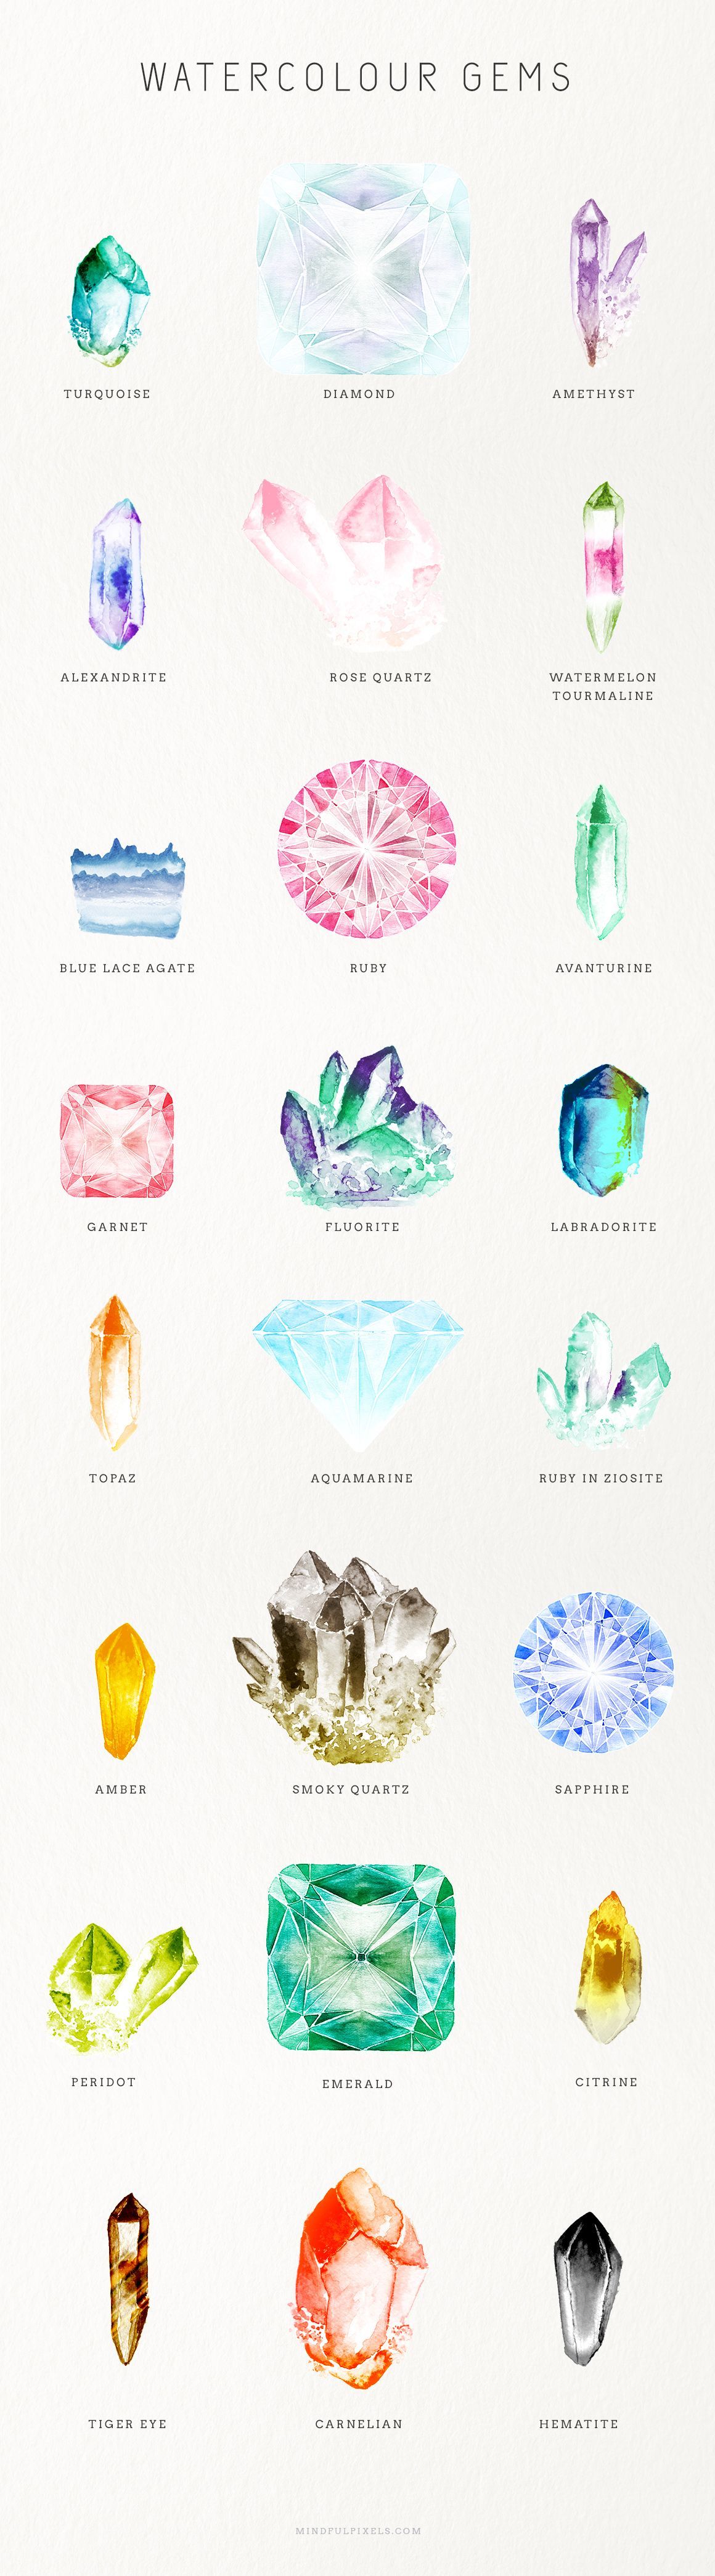 Watercolor gems